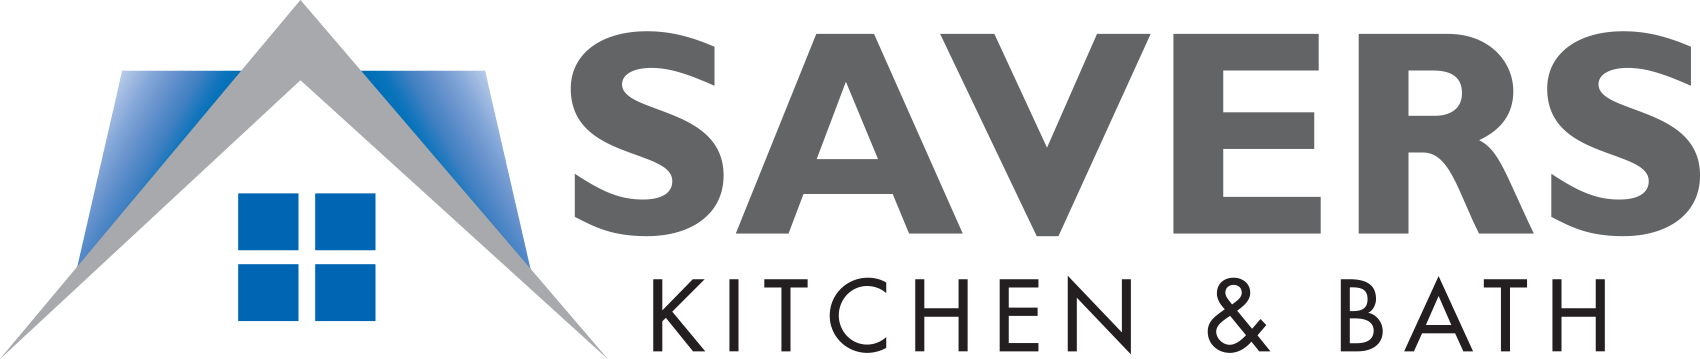 Savers Kitchen & Bath